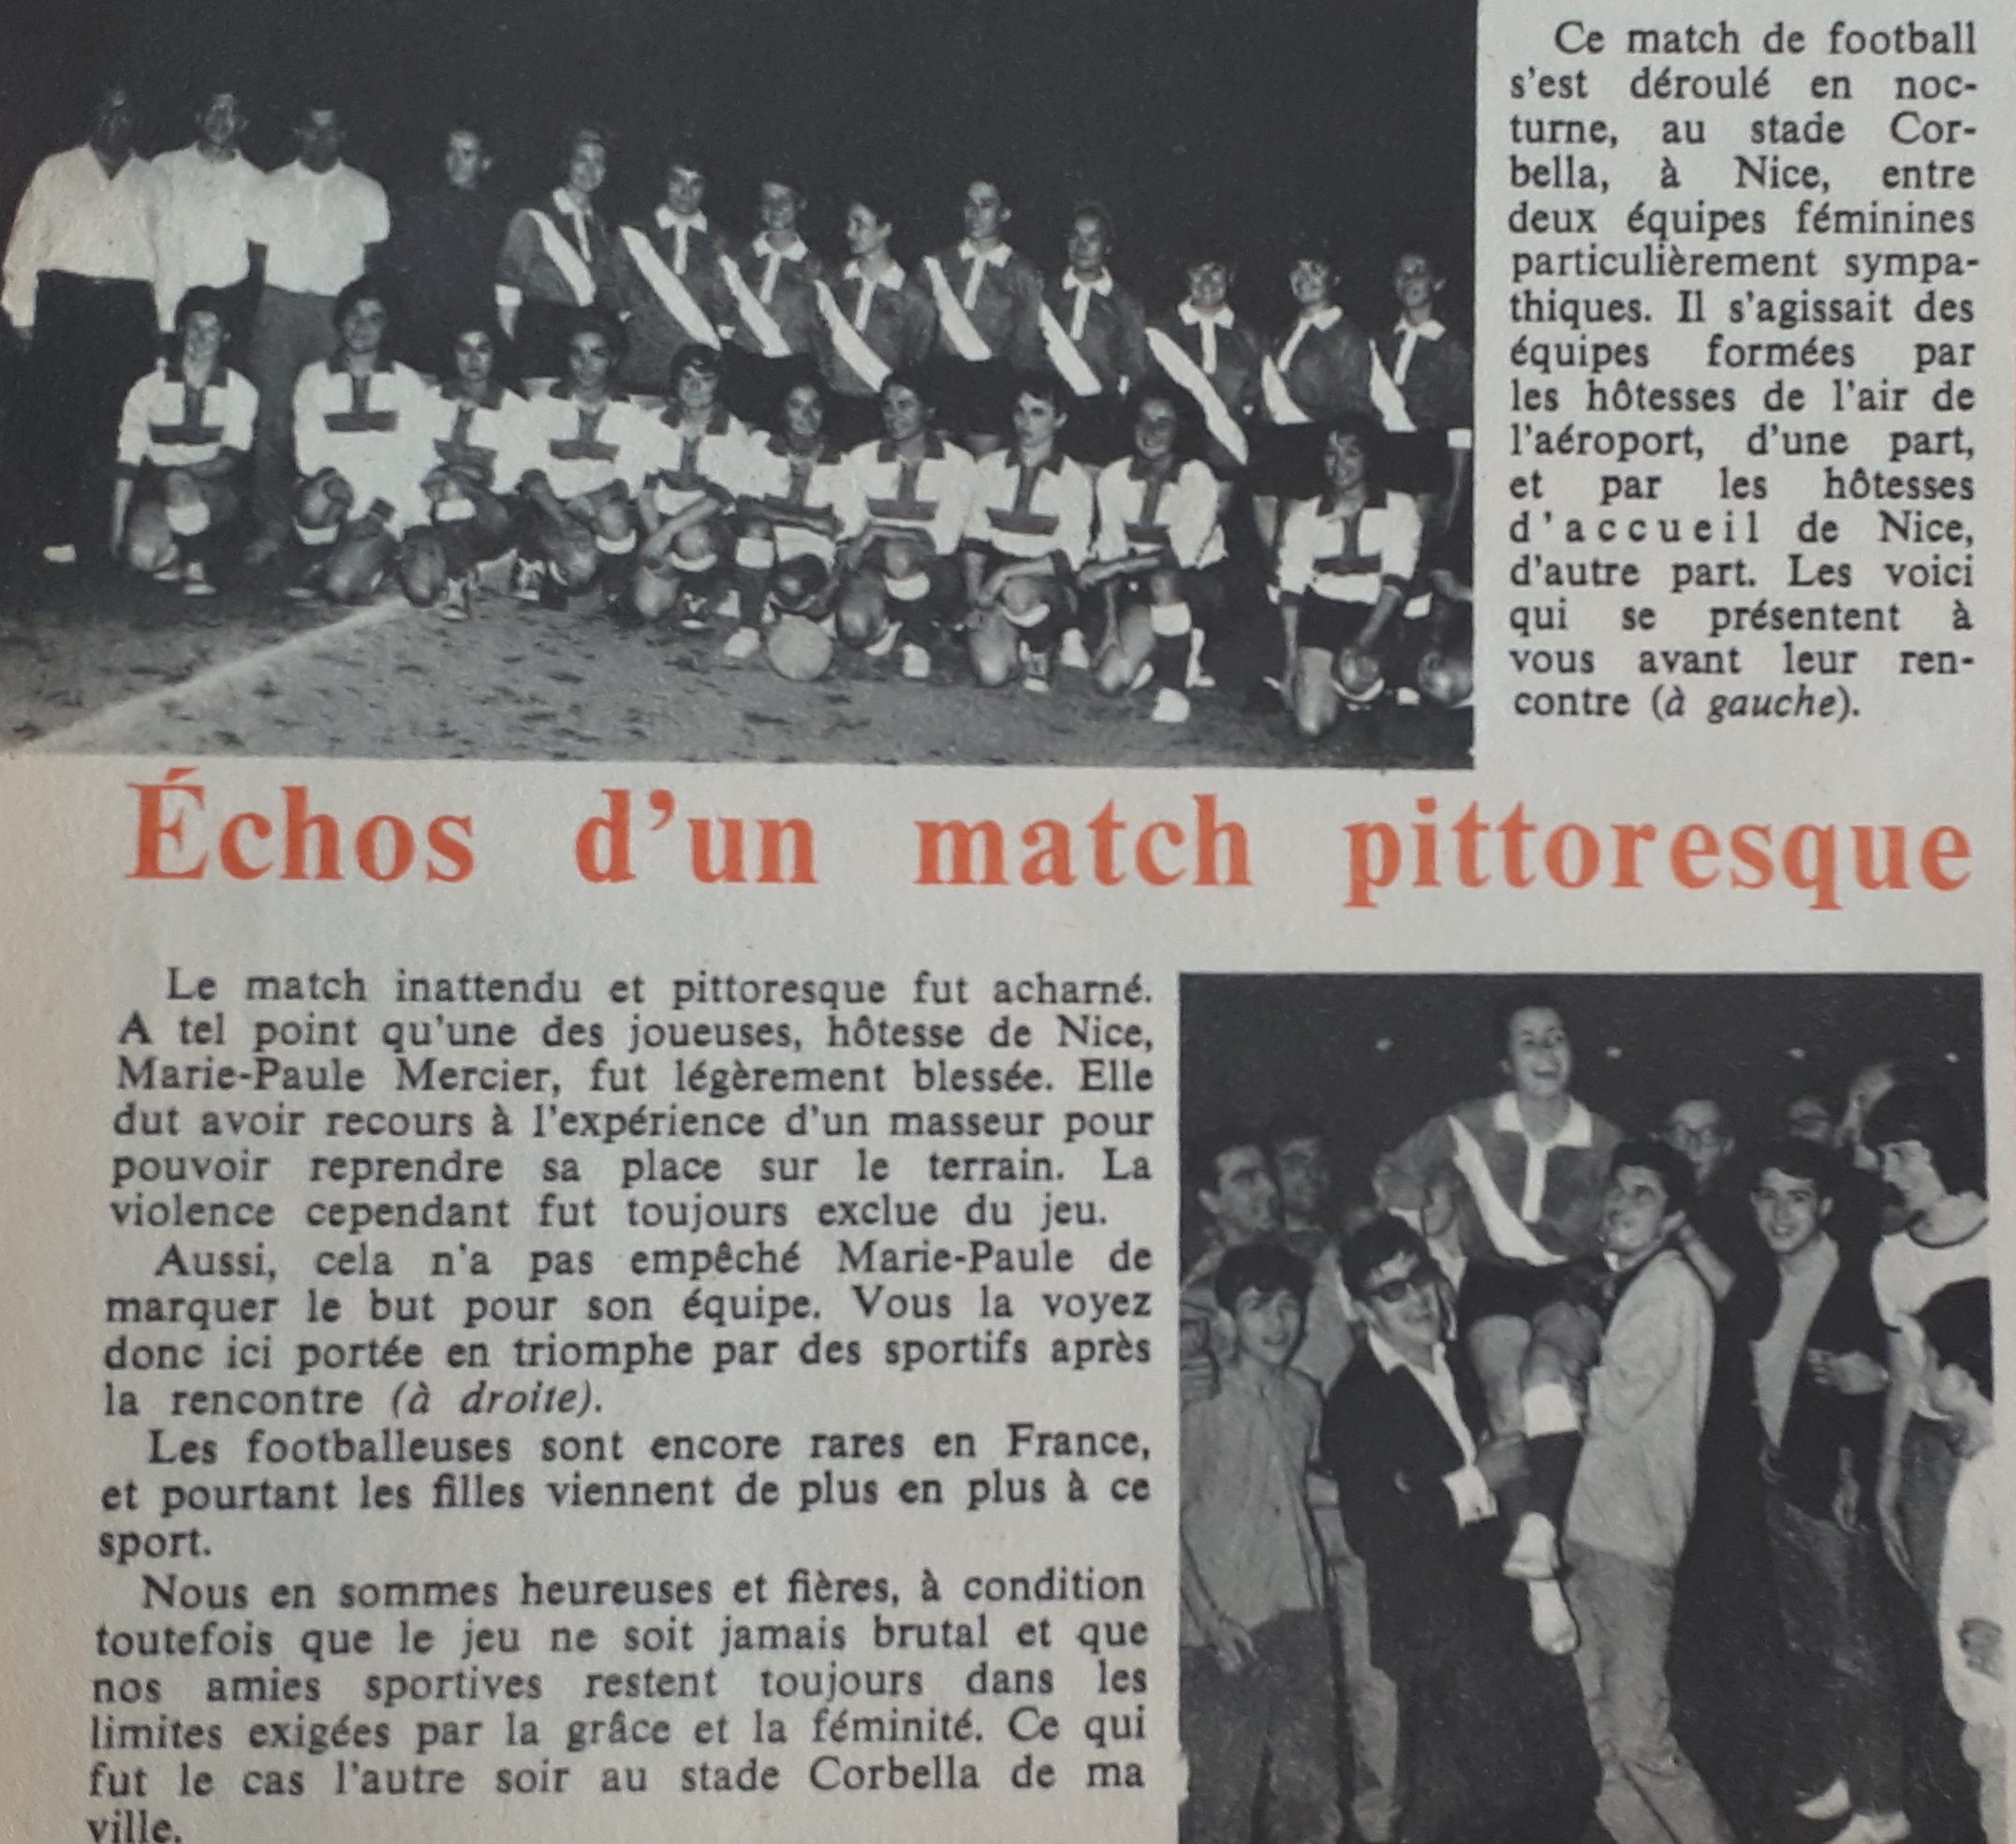 Août 1964, un magazine féminin fait l'écho d'une rencontre féminine à Nice